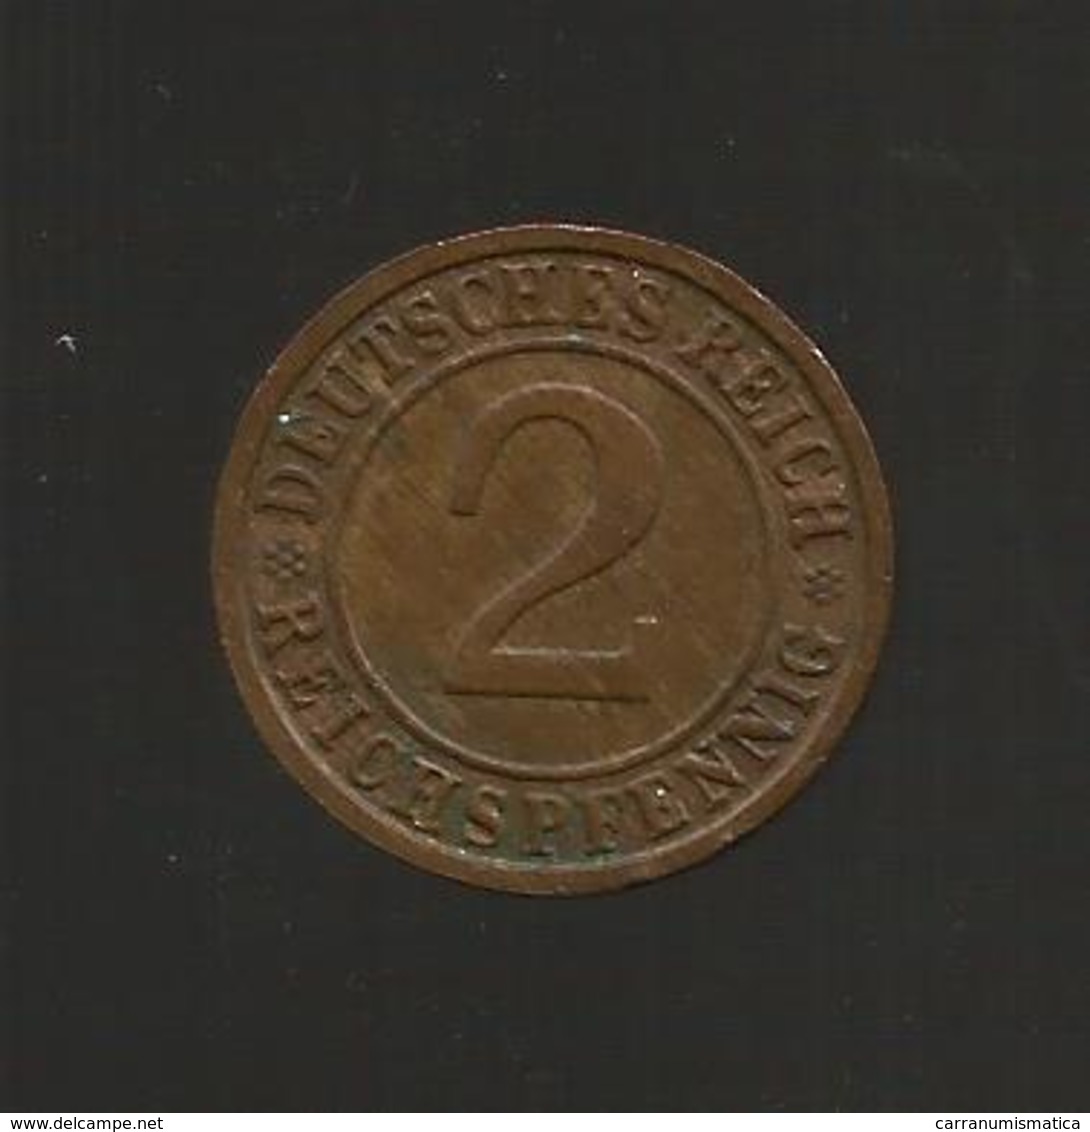 DEUTSCHLAND / GERMANY - 2 REICHSPFENNIG ( 1936 - D ) - 2 Reichspfennig